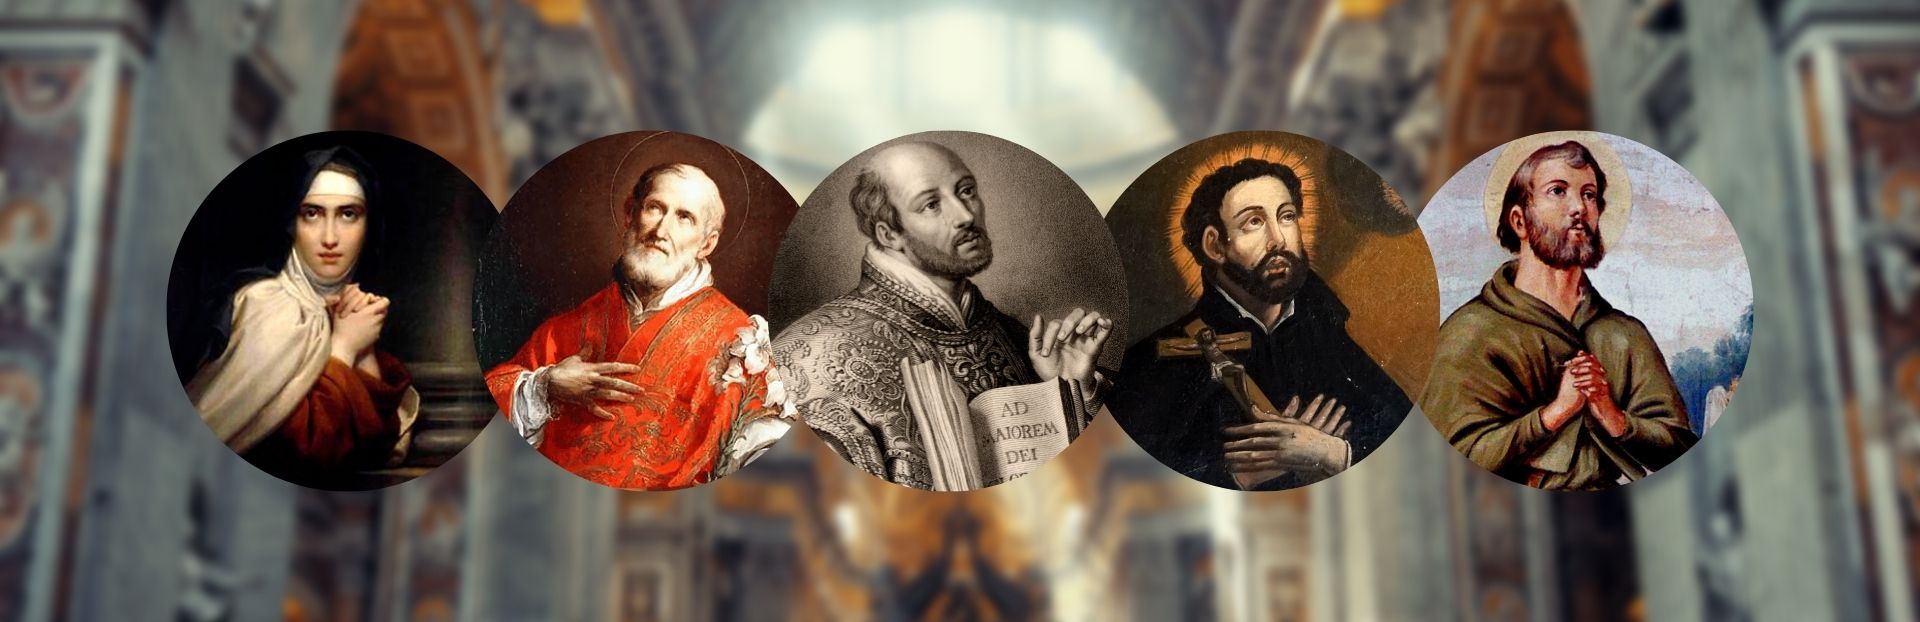 Santità e canonizzazione… per prepararsi al 12 marzo